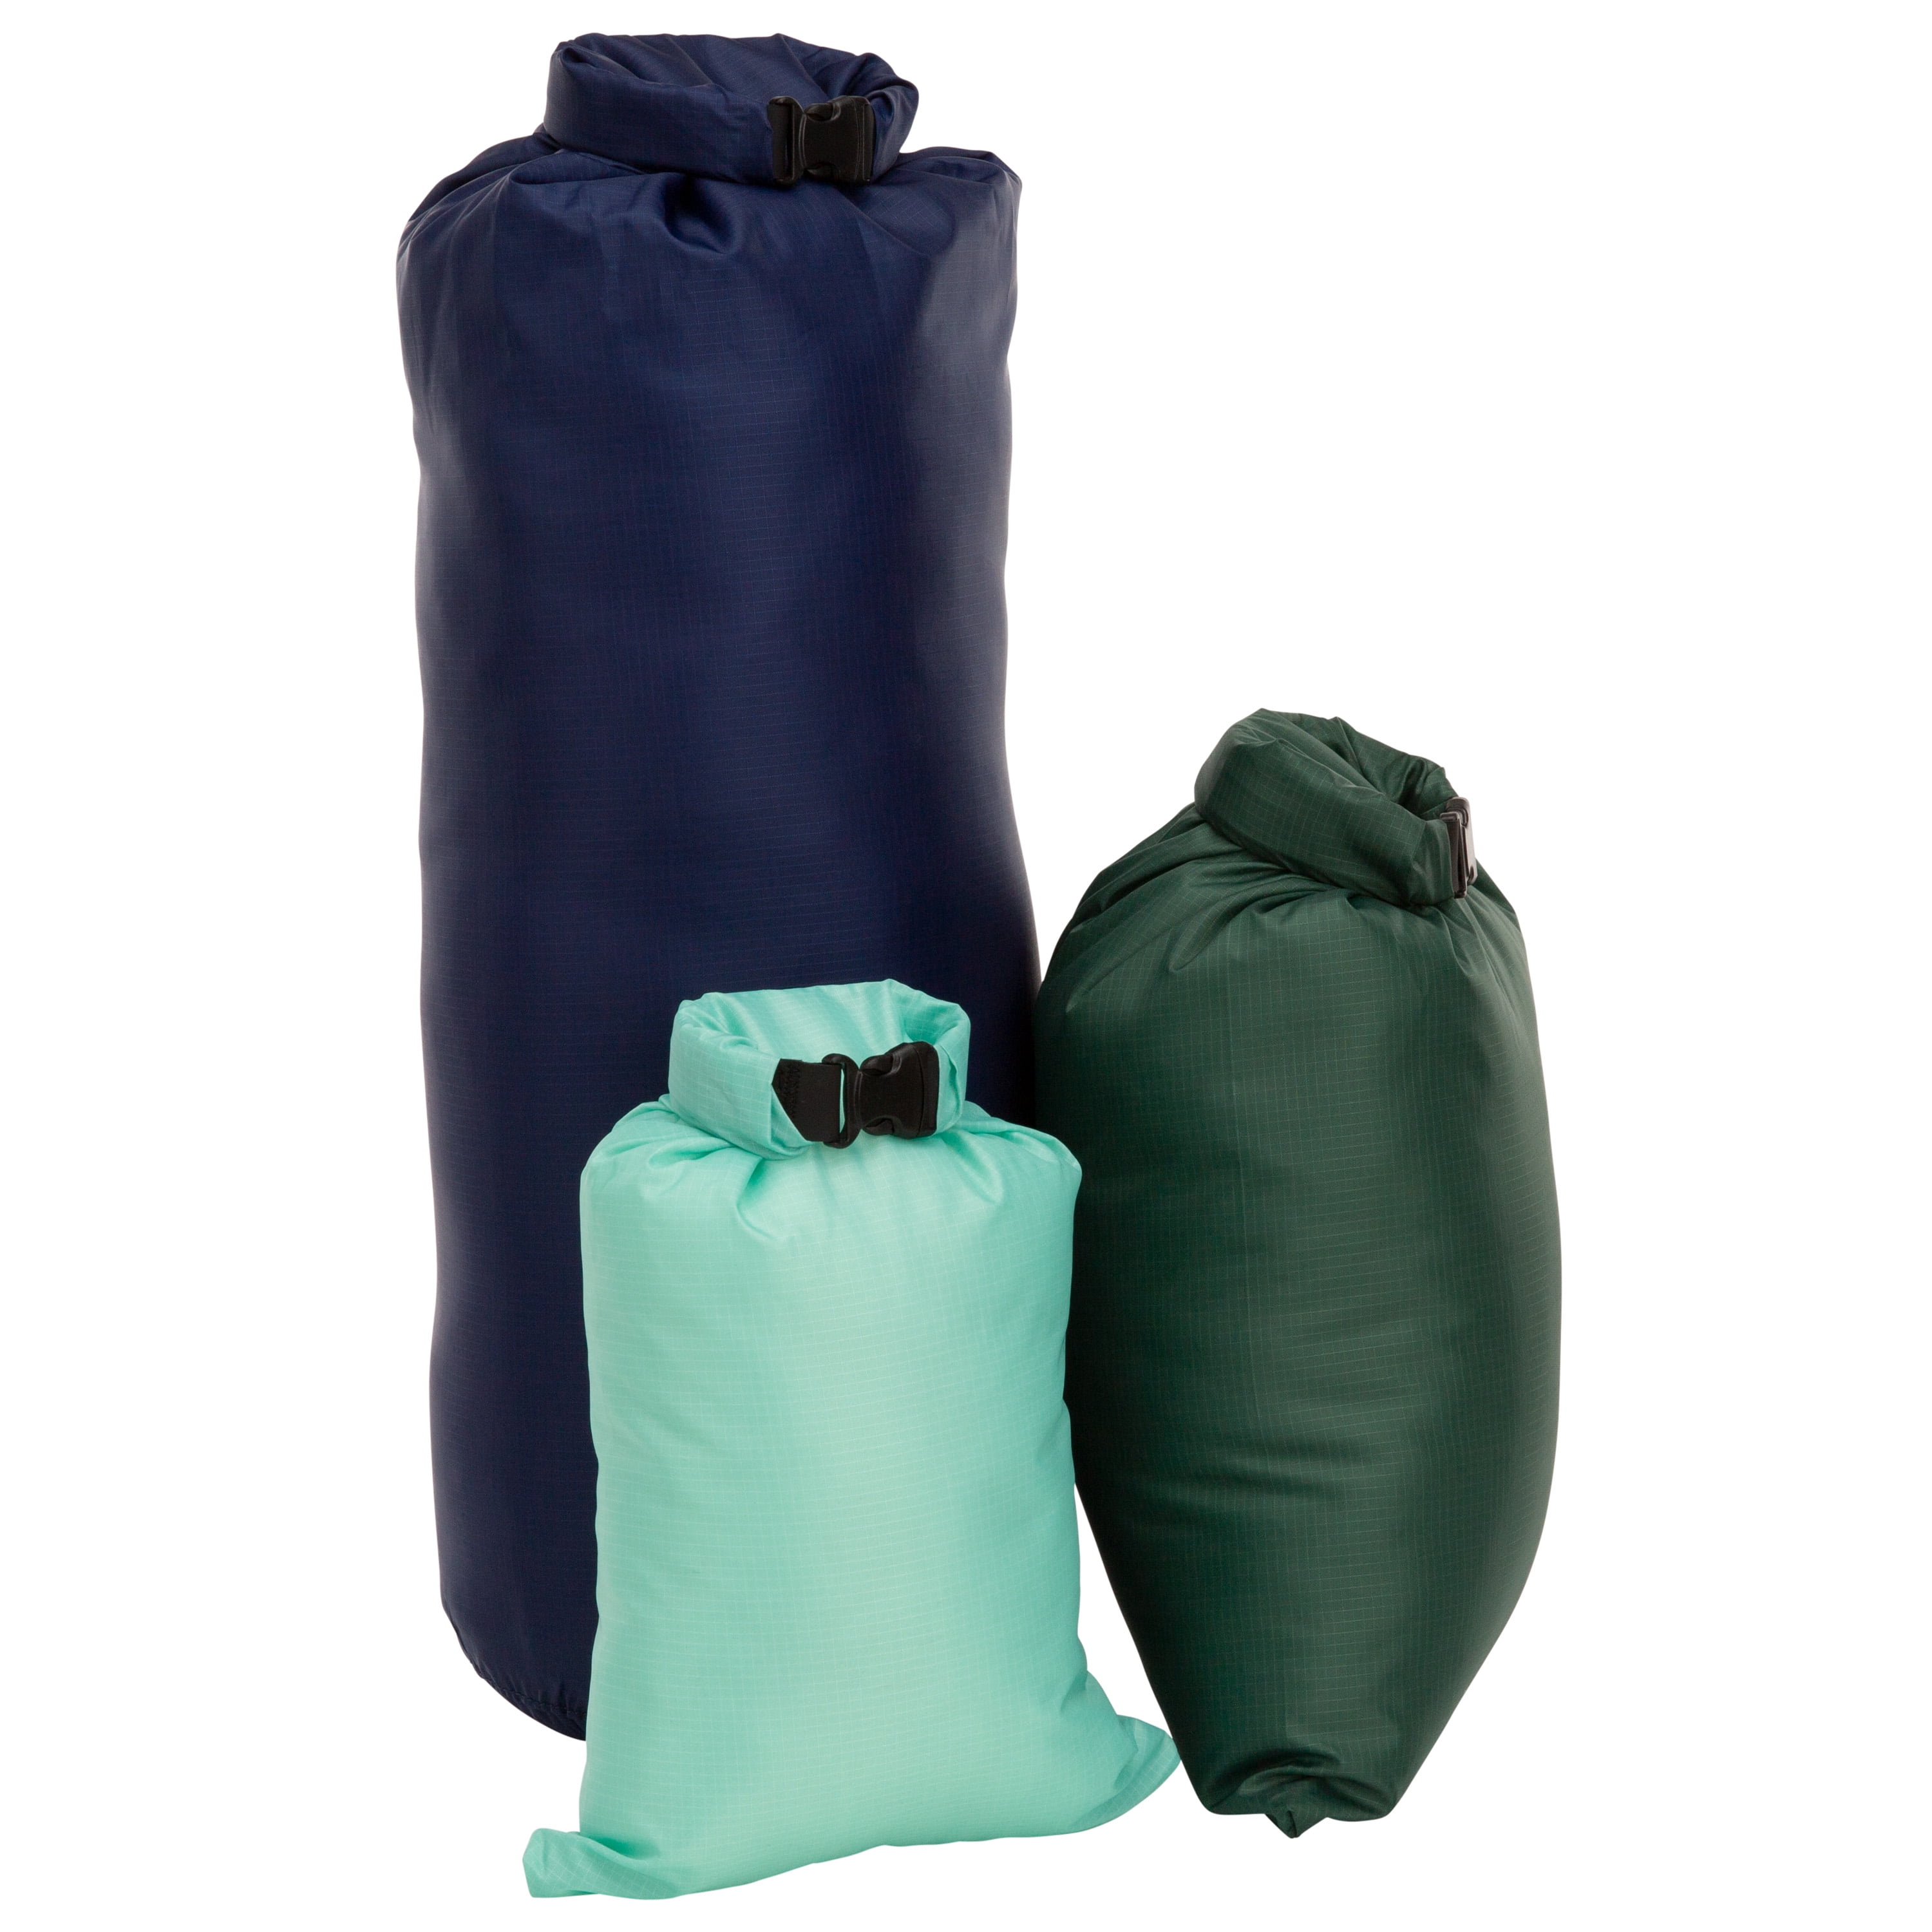 TrailGear Heavy Duty Waterproof Dry Bags